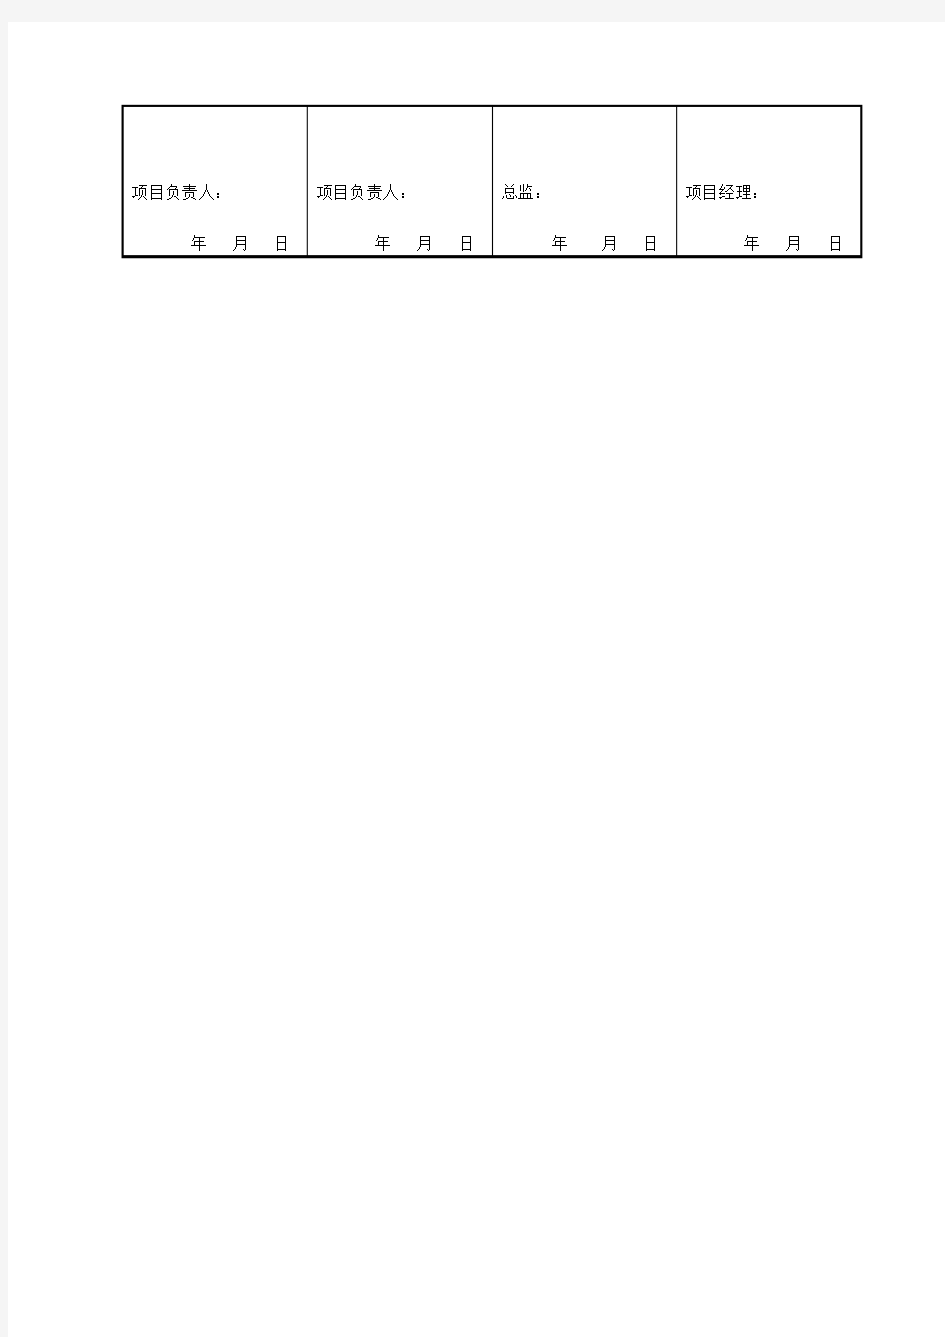 设计交底表(空白表格)标准格式